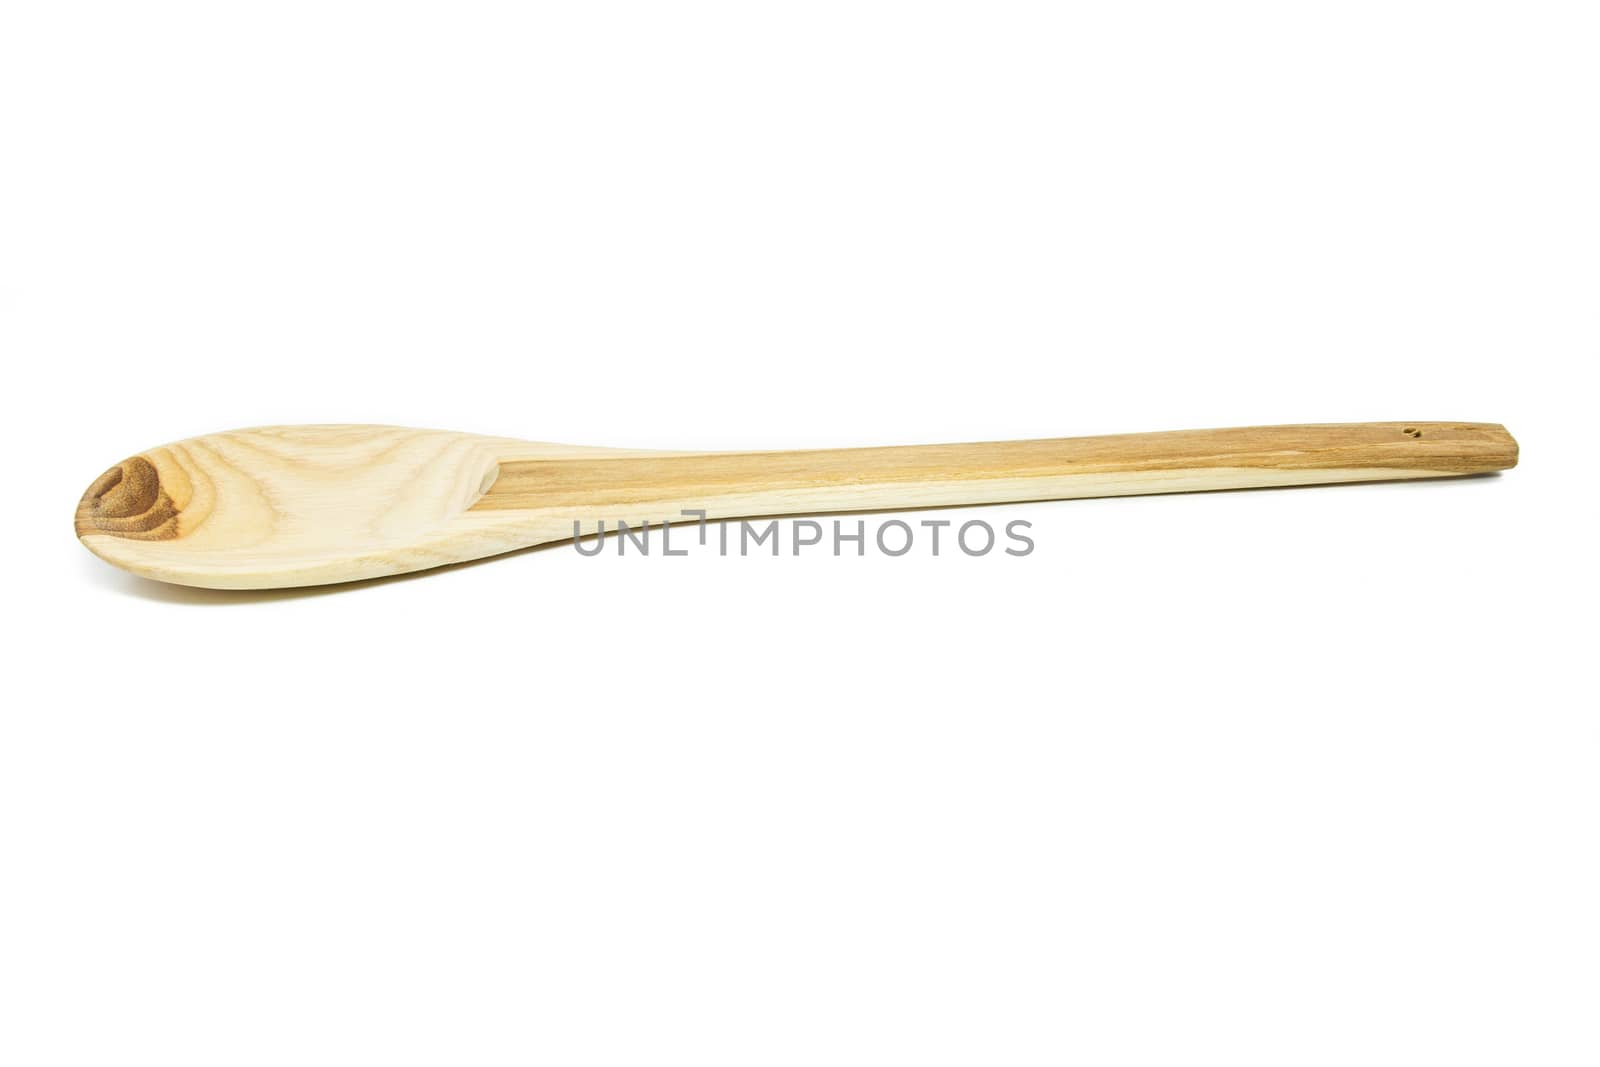 Wooden spoon by kasinv